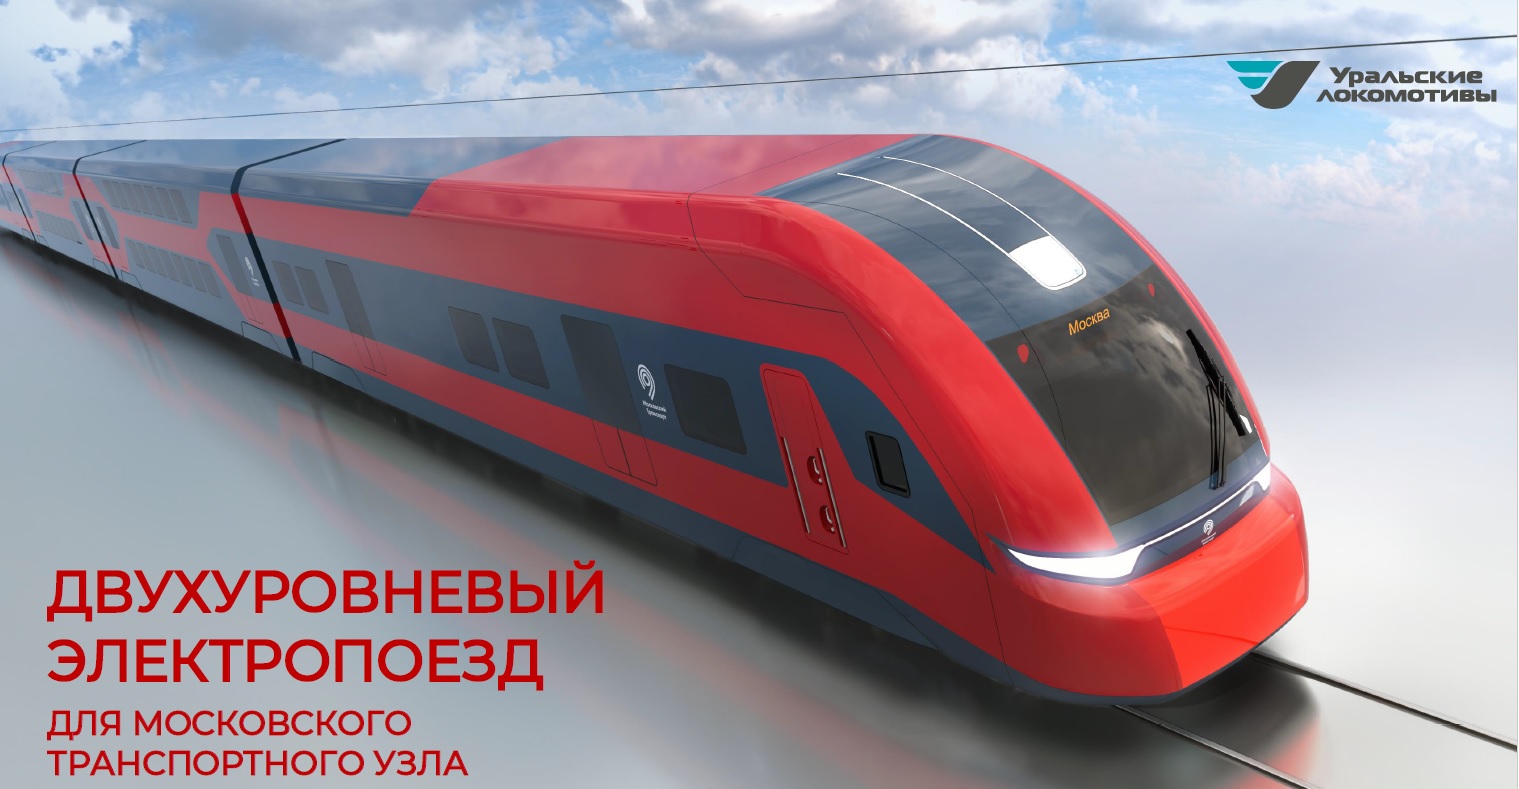 «Уральские локомотивы» представил новую линейку электропоездов